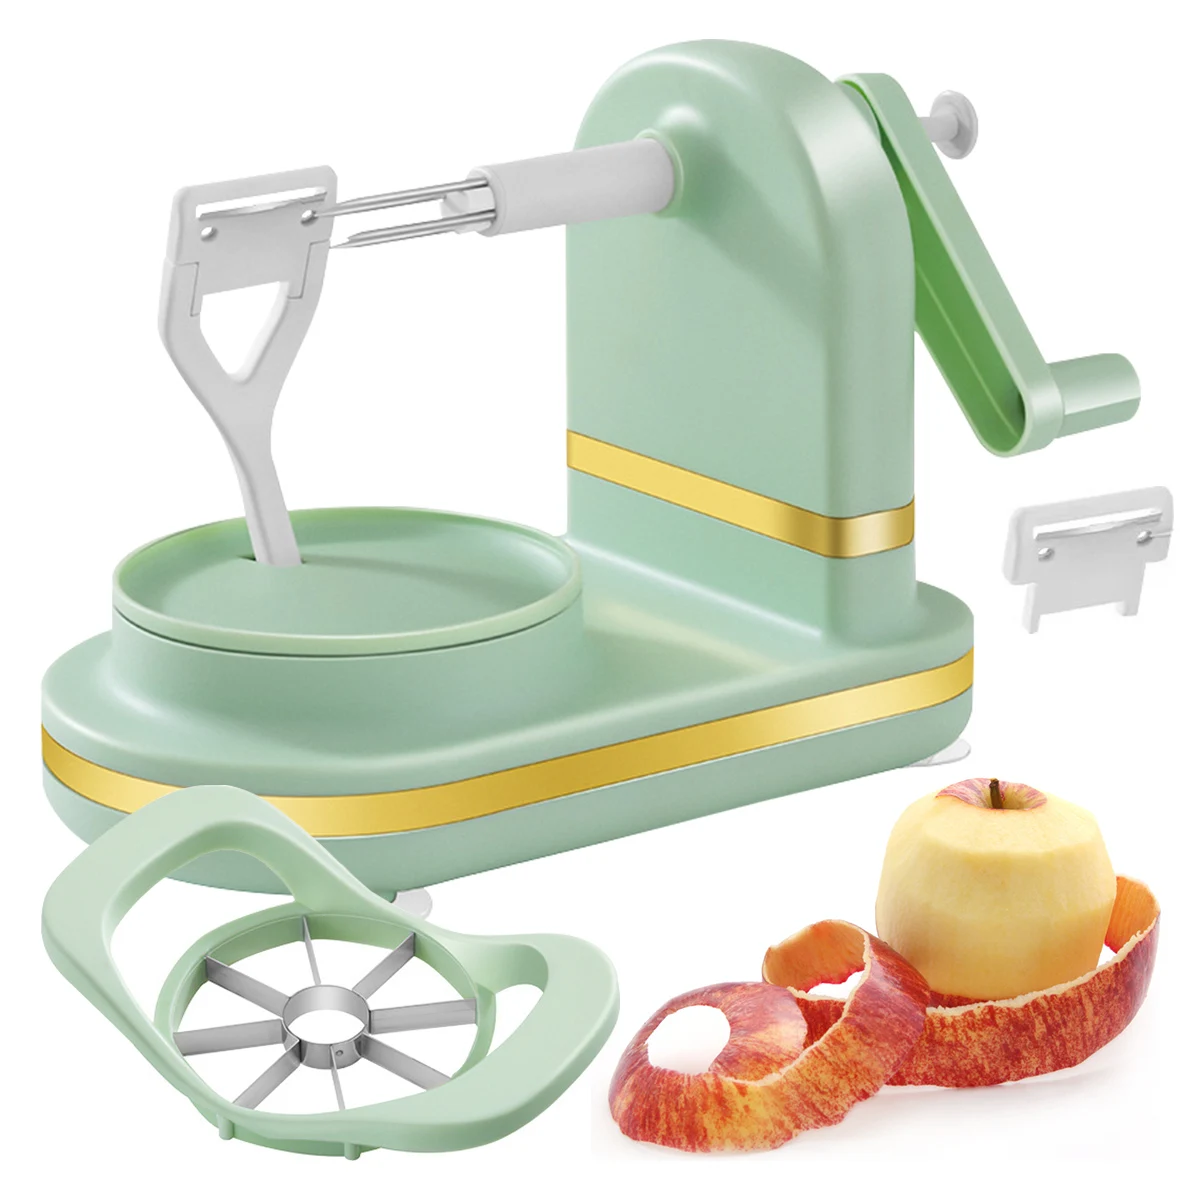 Овощечистка для яблок, кухонный инструмент с рукояткой для чистки фруктов